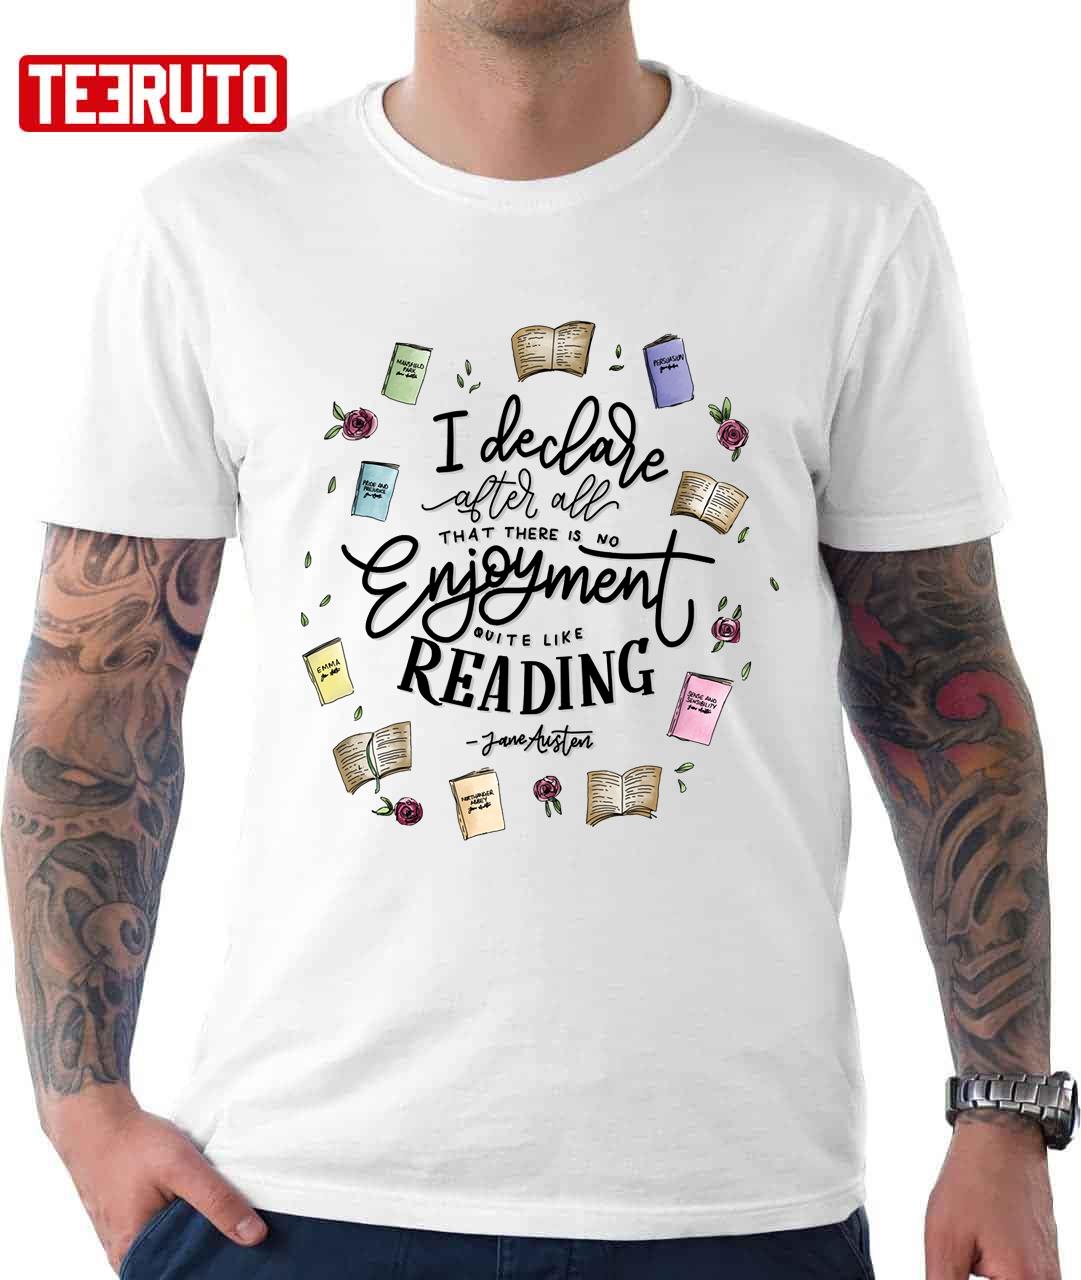 No Enjoyment Like Reading Unisex T-Shirt